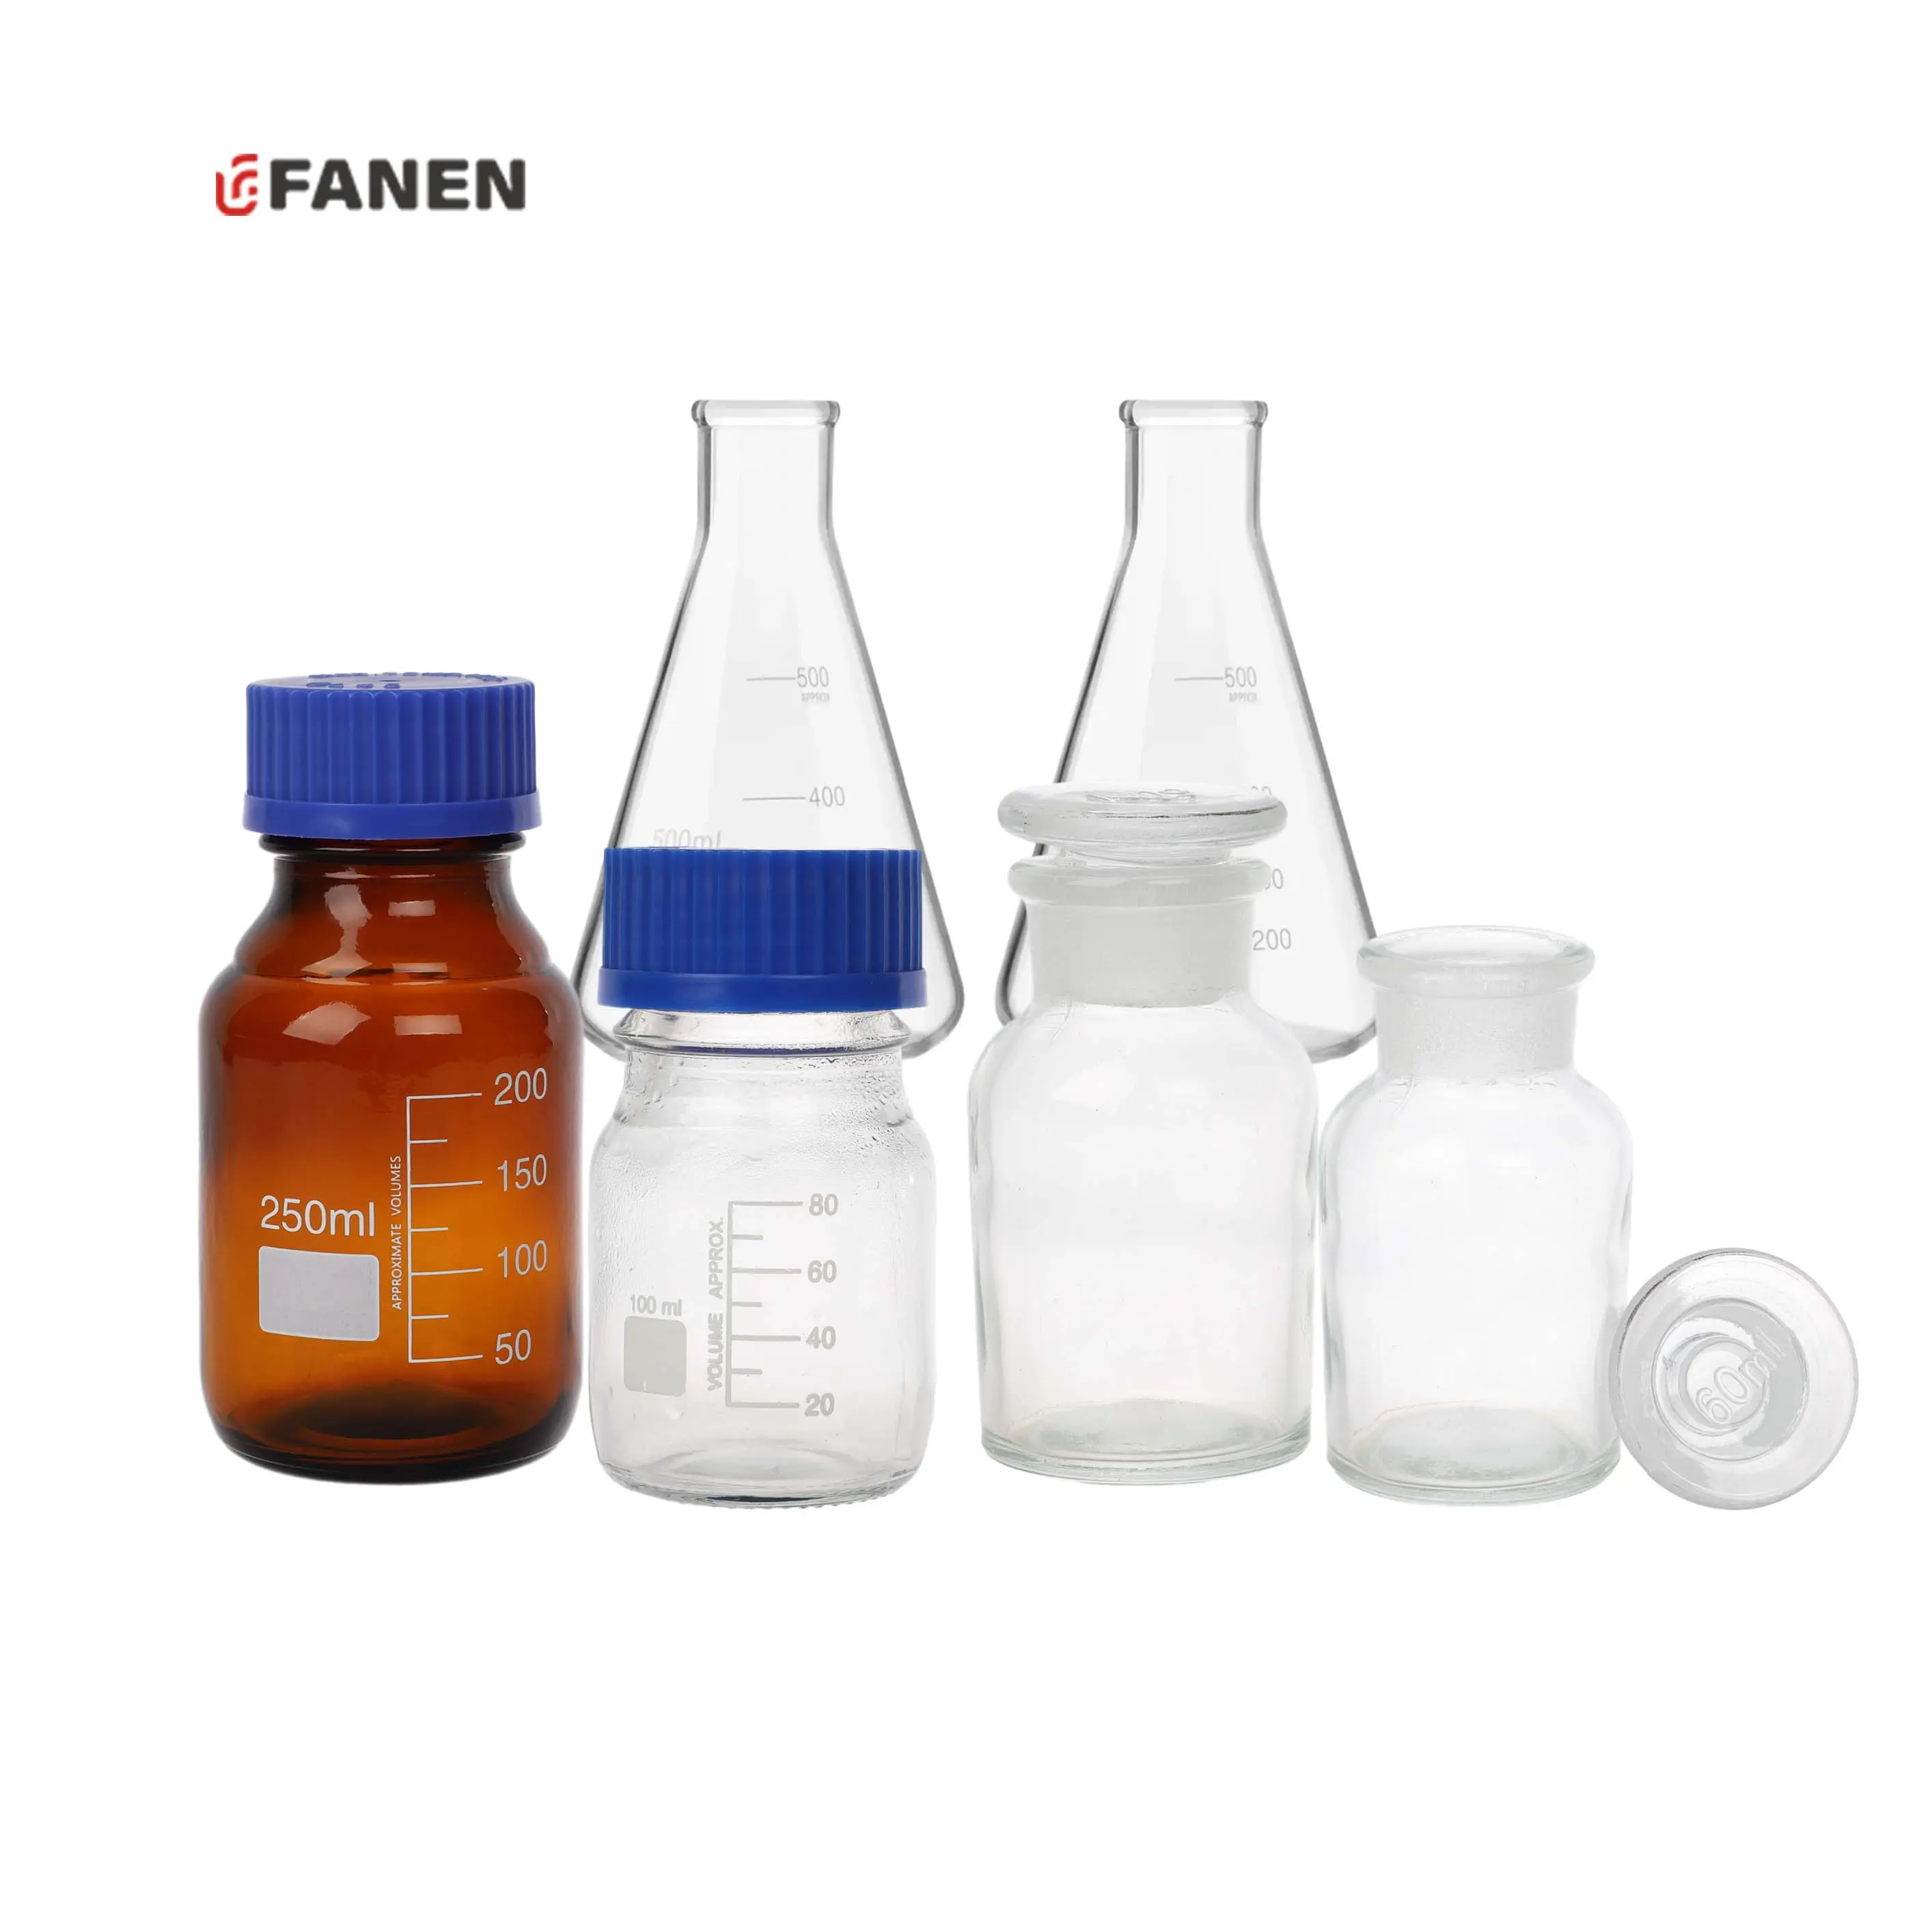 Fanen Boro3.3ขวดแก้วสำหรับใส่ในห้องปฏิบัติการพร้อมฝาเกลียวขวดน้ำยาพลาสติกสีน้ำเงิน